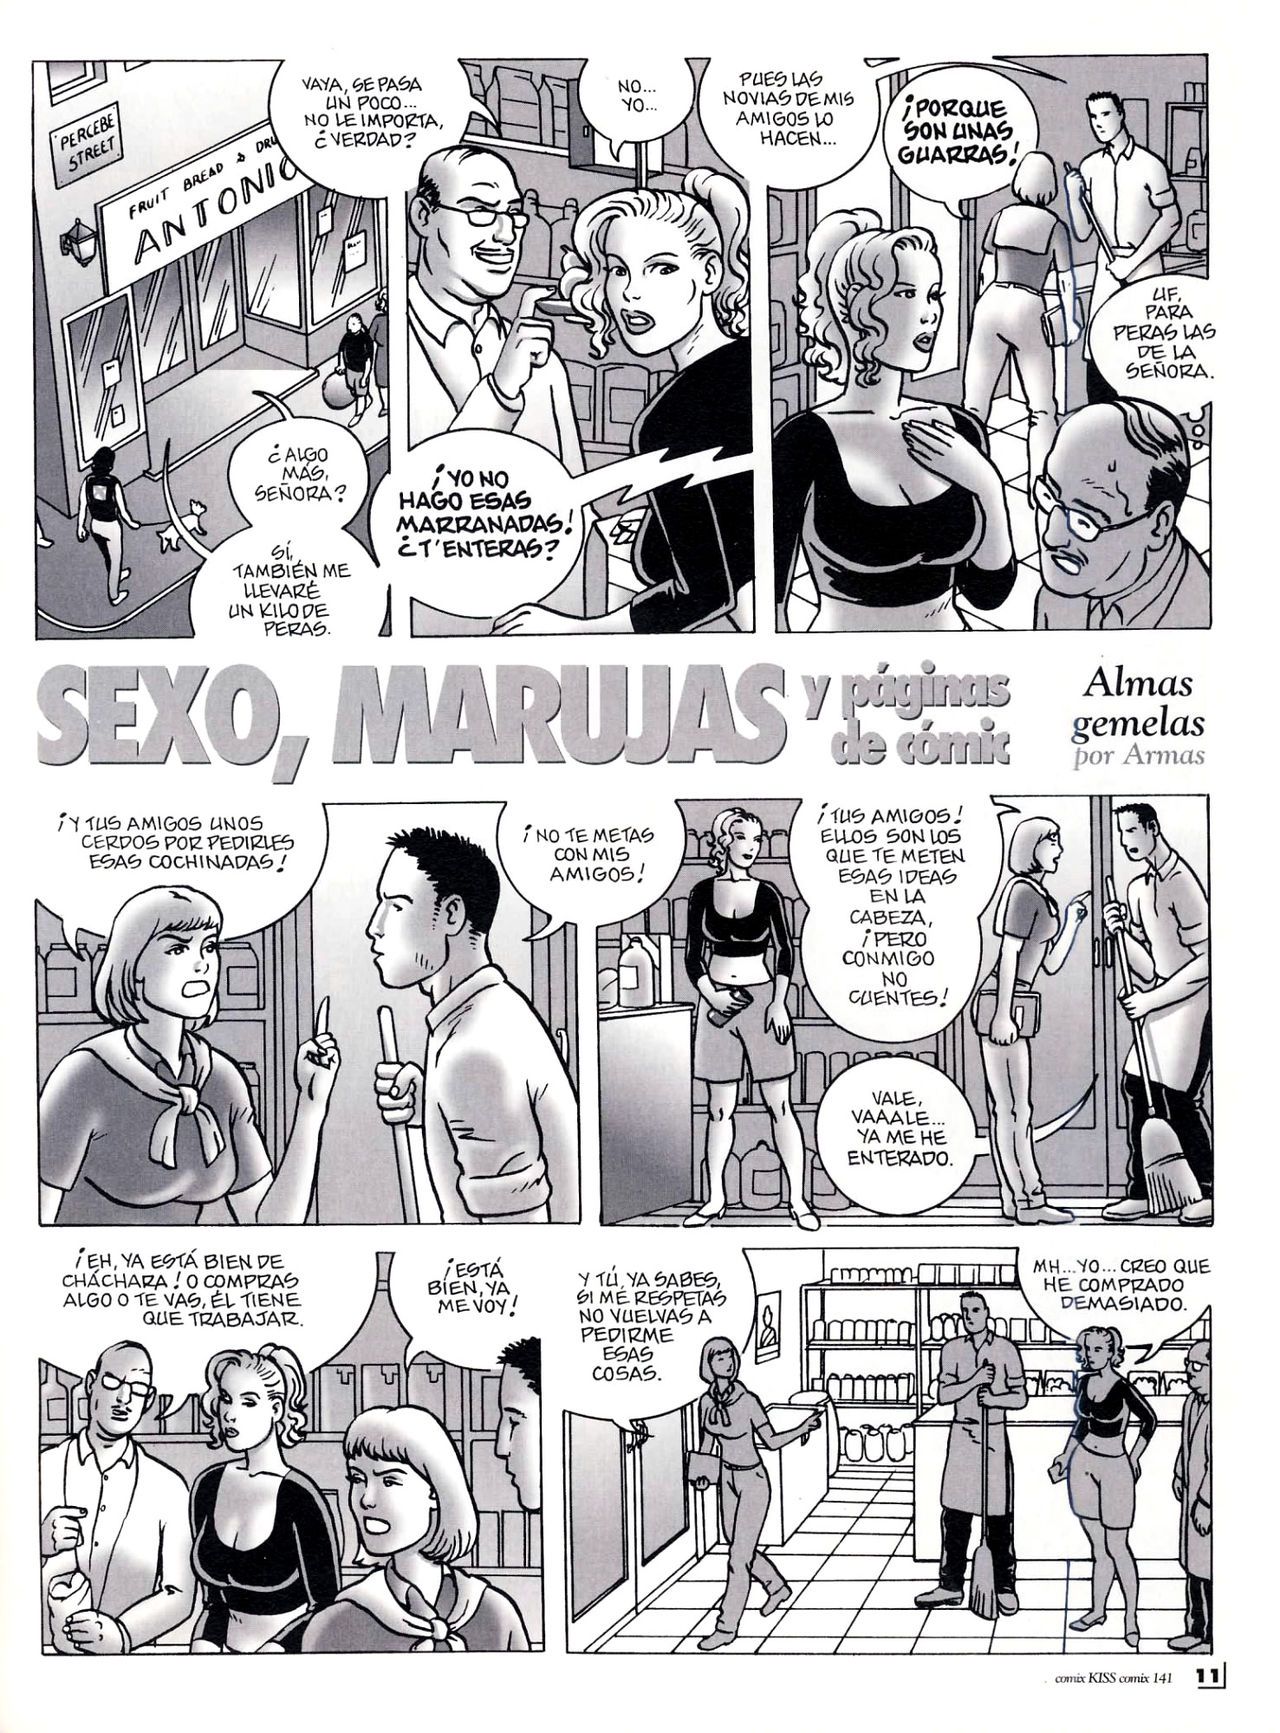 [Ramon Armas] Sexo, marujas y páginas de cómic (Spanish) 18